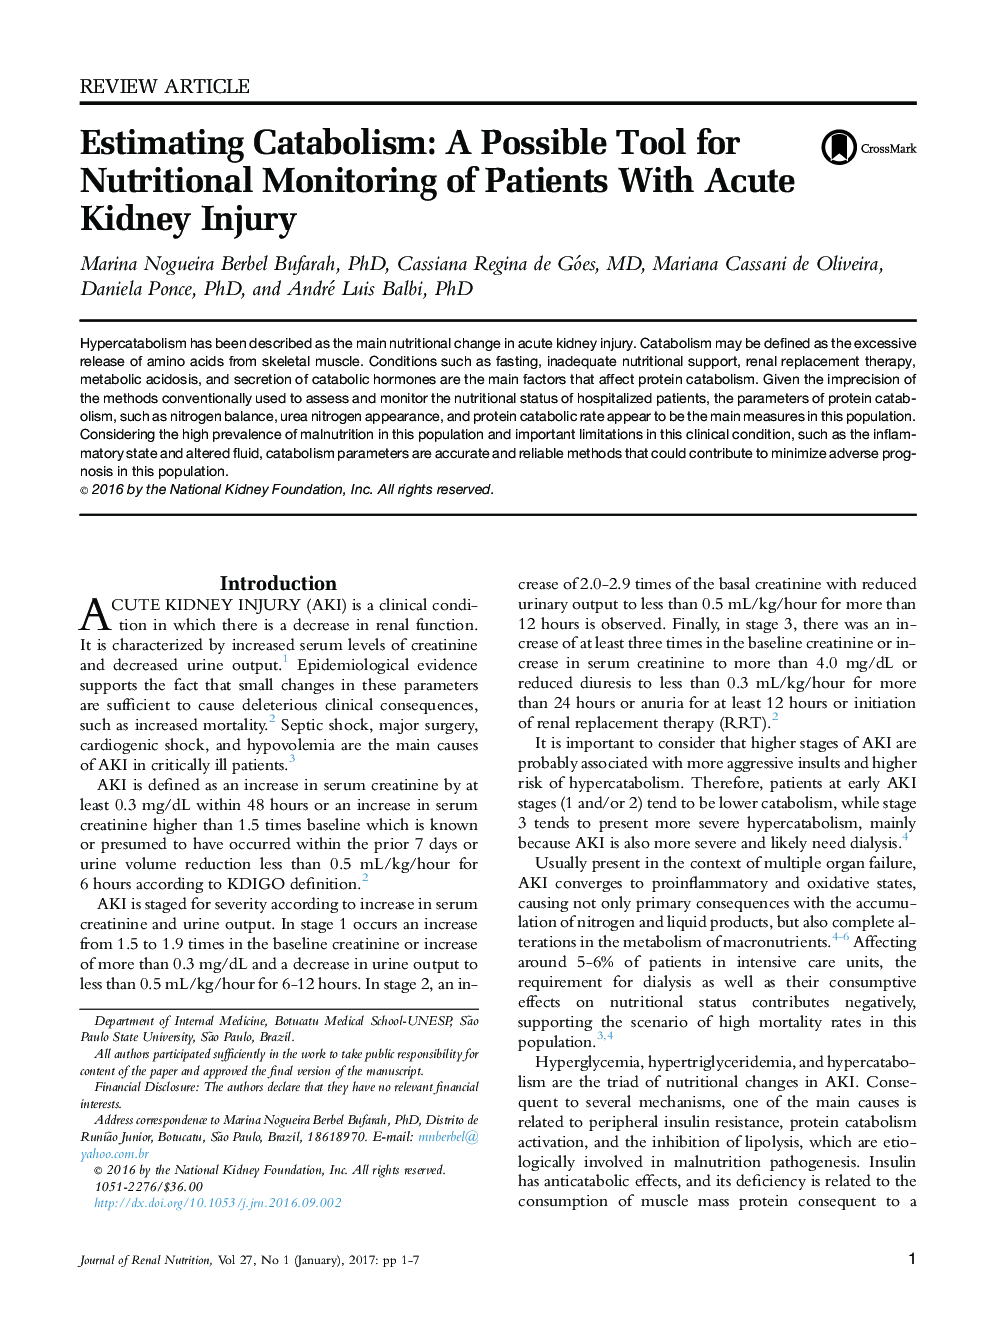 برآورد کاتابولیسم: یک ابزار احتمالی برای نظارت بر تغذیه بیماران مبتلا به آسیب کبدی حاد 